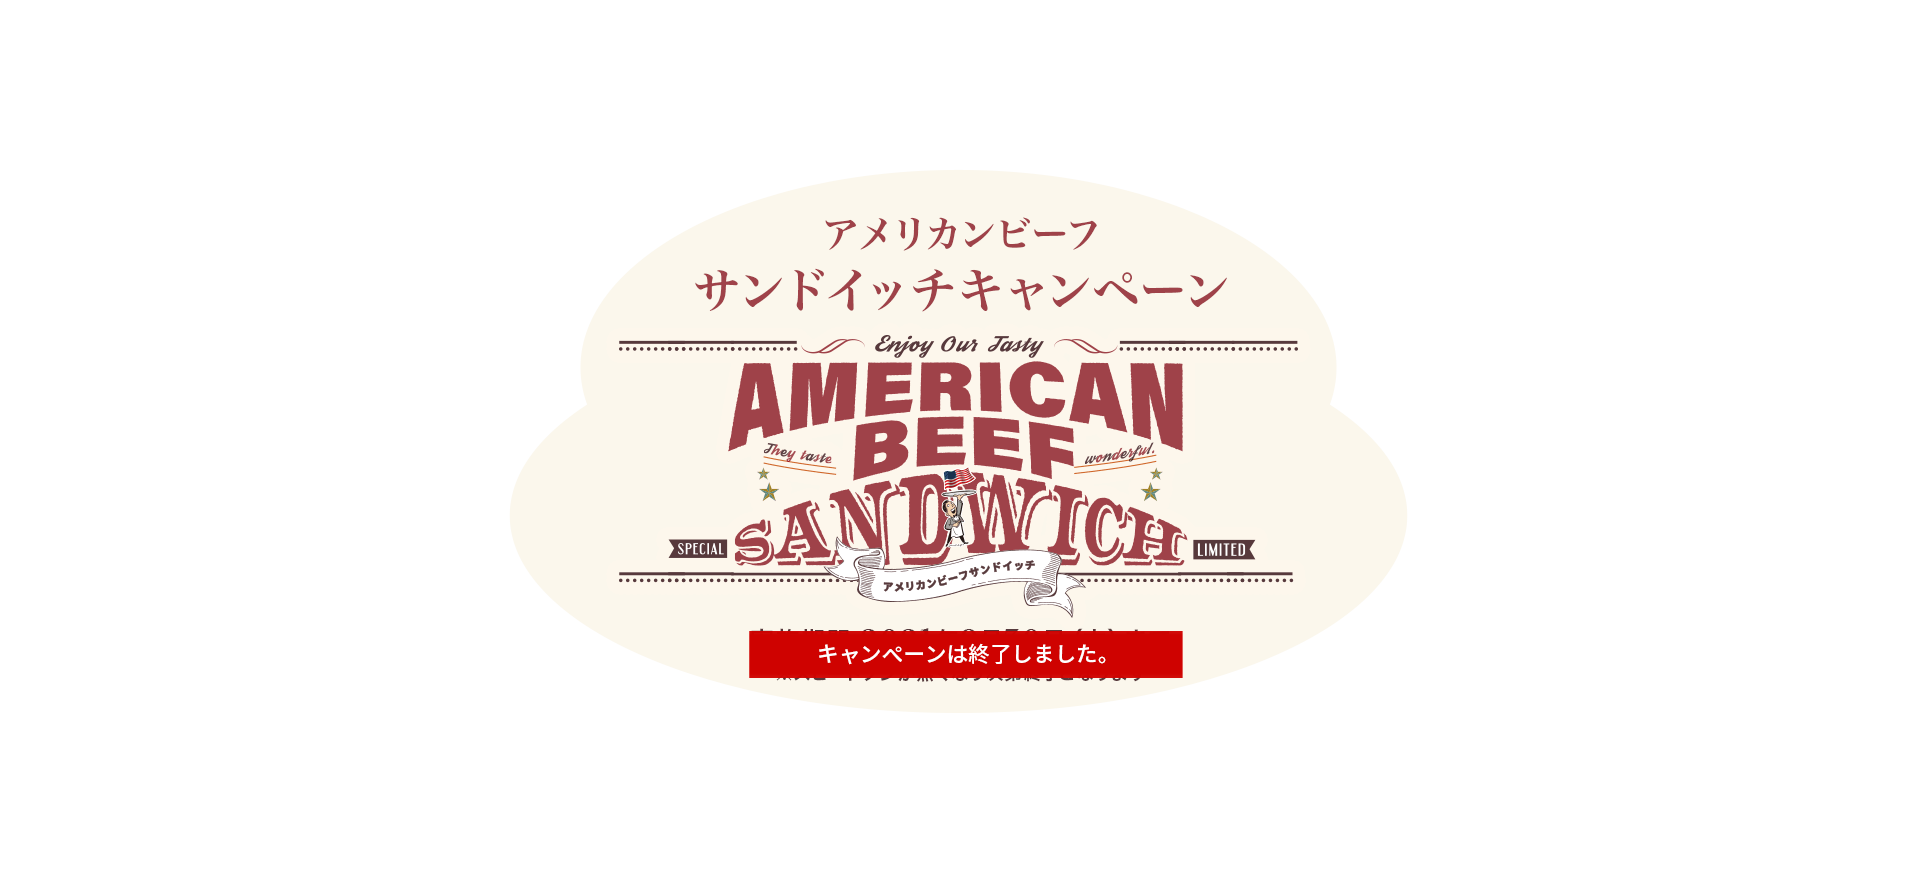 食べて！当たる！もらえる！アメリカンビーフサンドイッチキャンペーン AMERICAN BEEF SANDWICH 一気にたためるレジかごバッグが当たる！ 実施期間：2021年9月1日（水）〜9月30日（木）※スピードクジが無くなり次第終了となります